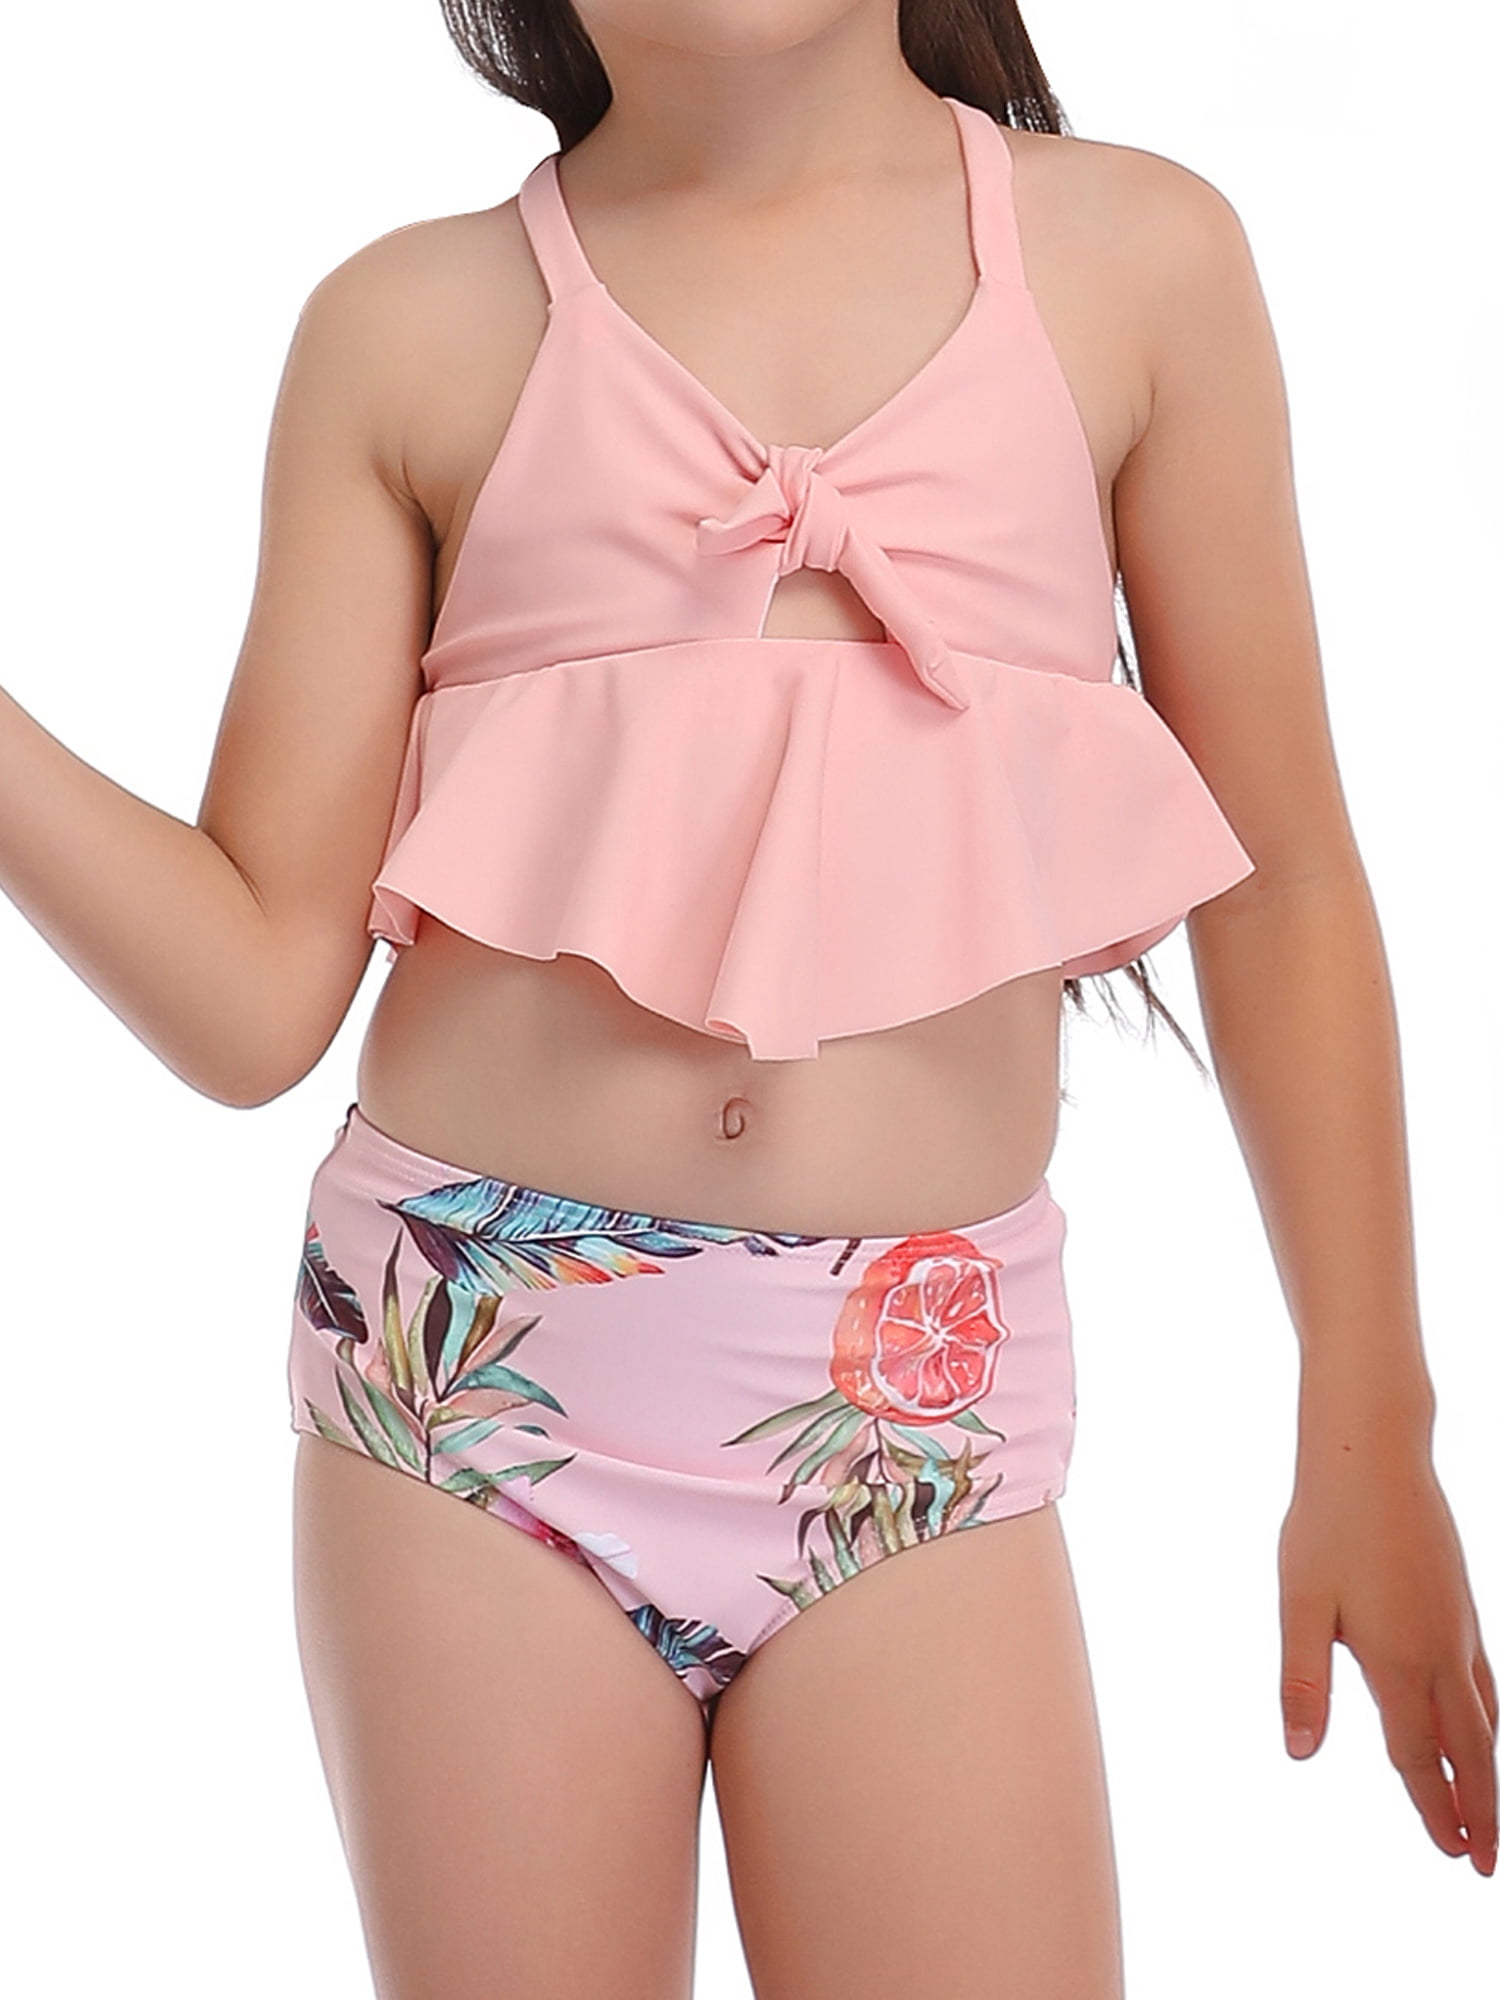 Galaxy Moon Wolf Bikini Swimsuit Beachwear Two Pieces Set Sling Swimwear for Kids Women Girl 